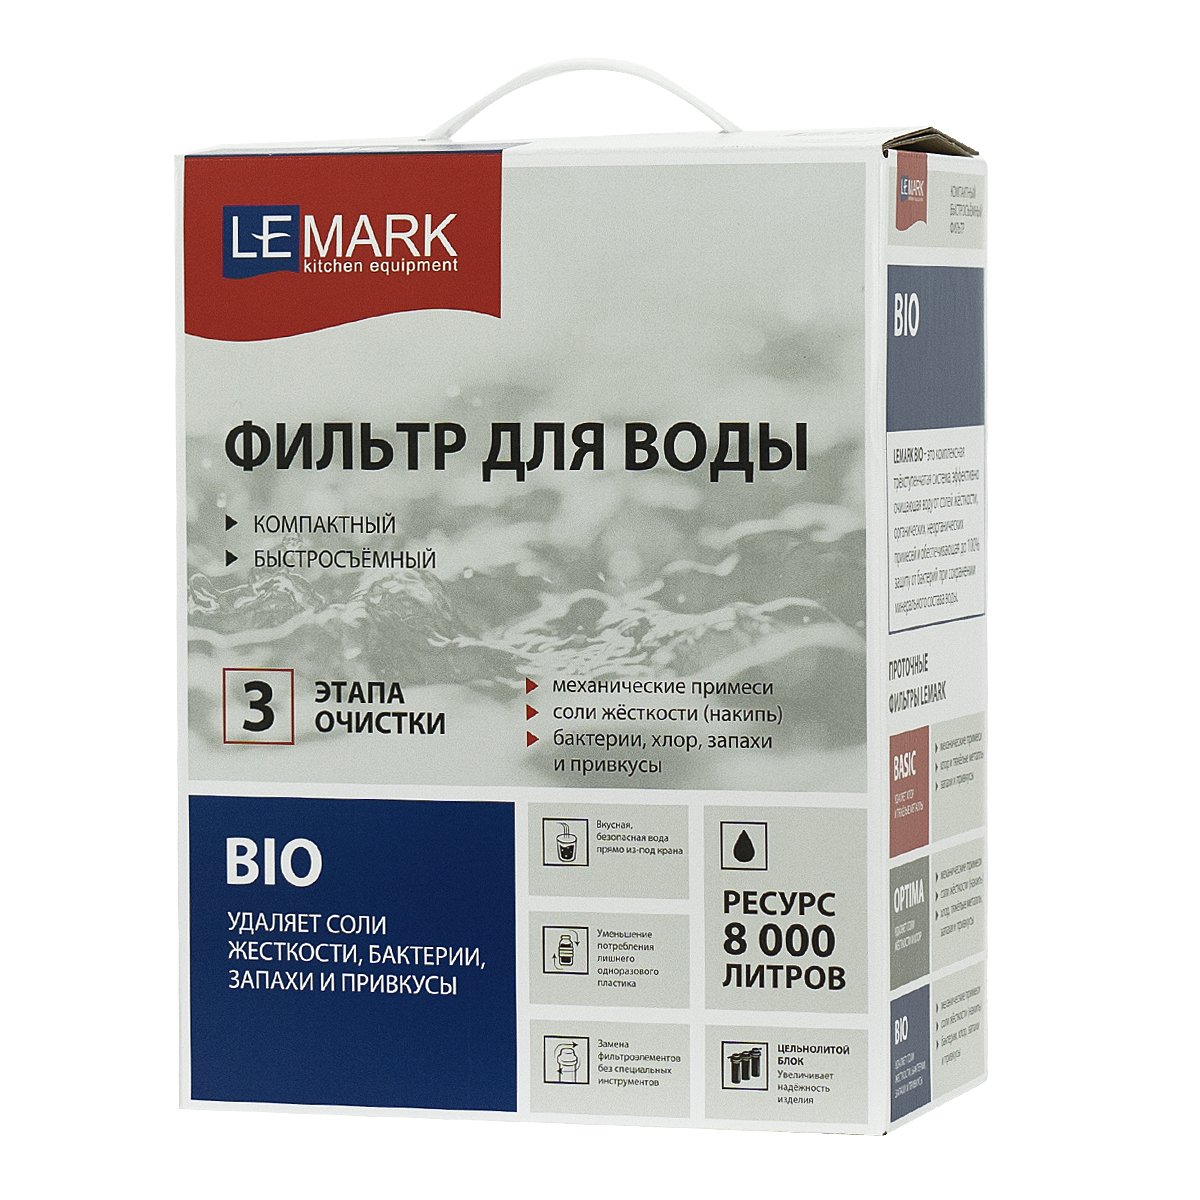 Фильтр Lemark BIO для очистки воды от соли жесткости (накипь), бактерий, хлора и привкусов (9920087) - фото 4